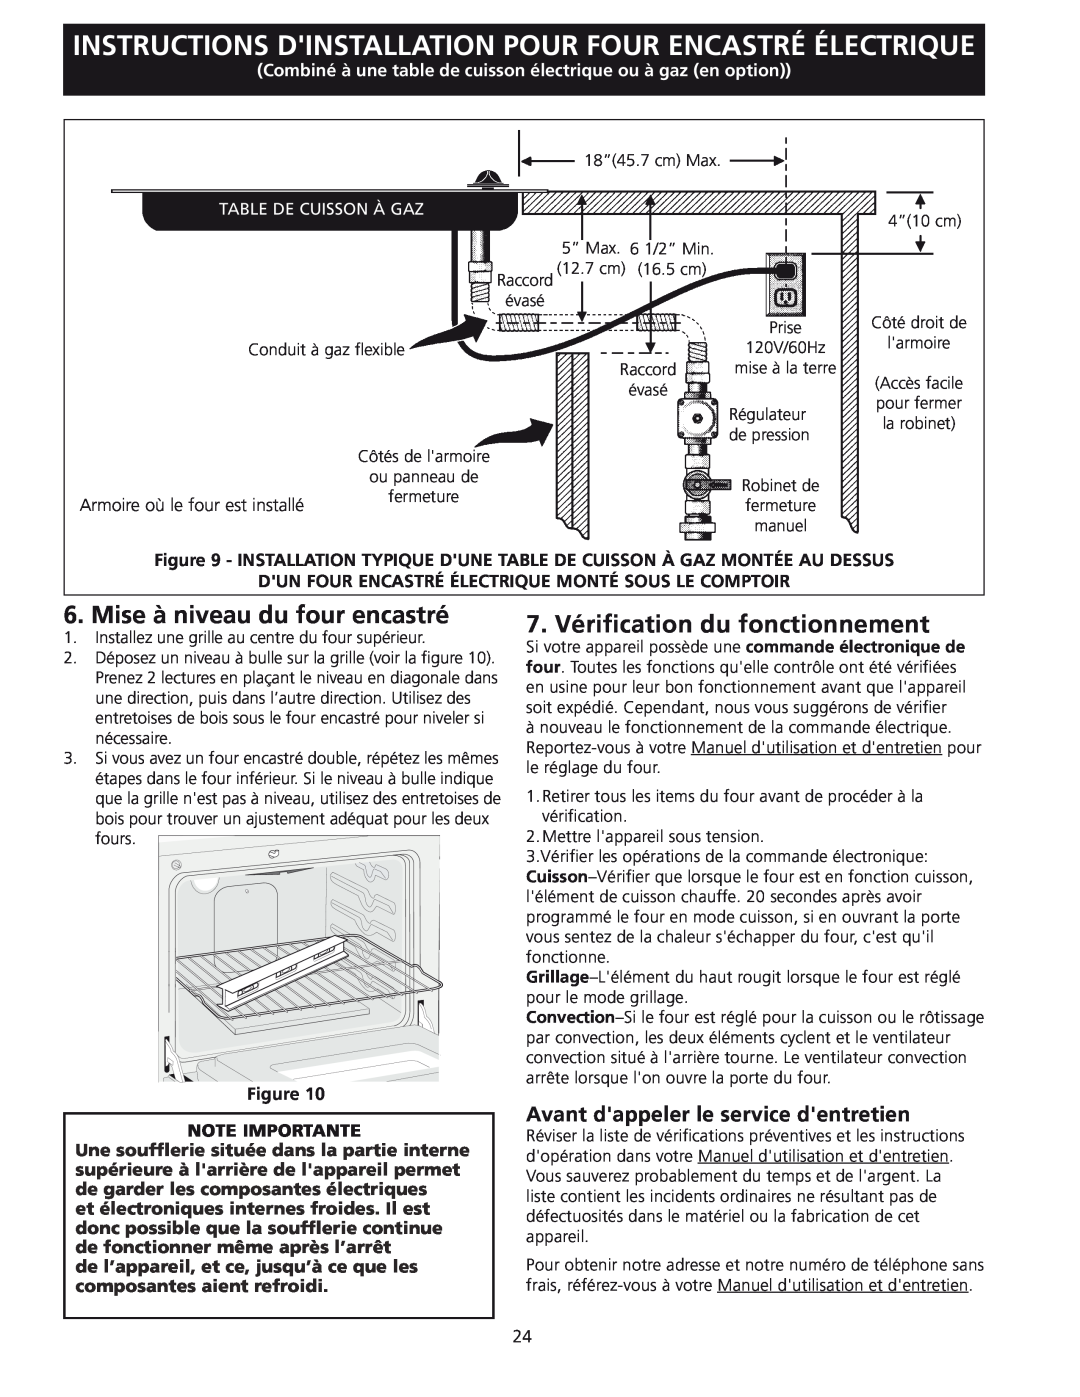 Frigidaire 318201532 manual Mise à niveau du four encastré, 7. Vérification du fonctionnement, Table De Cuisson À Gaz 